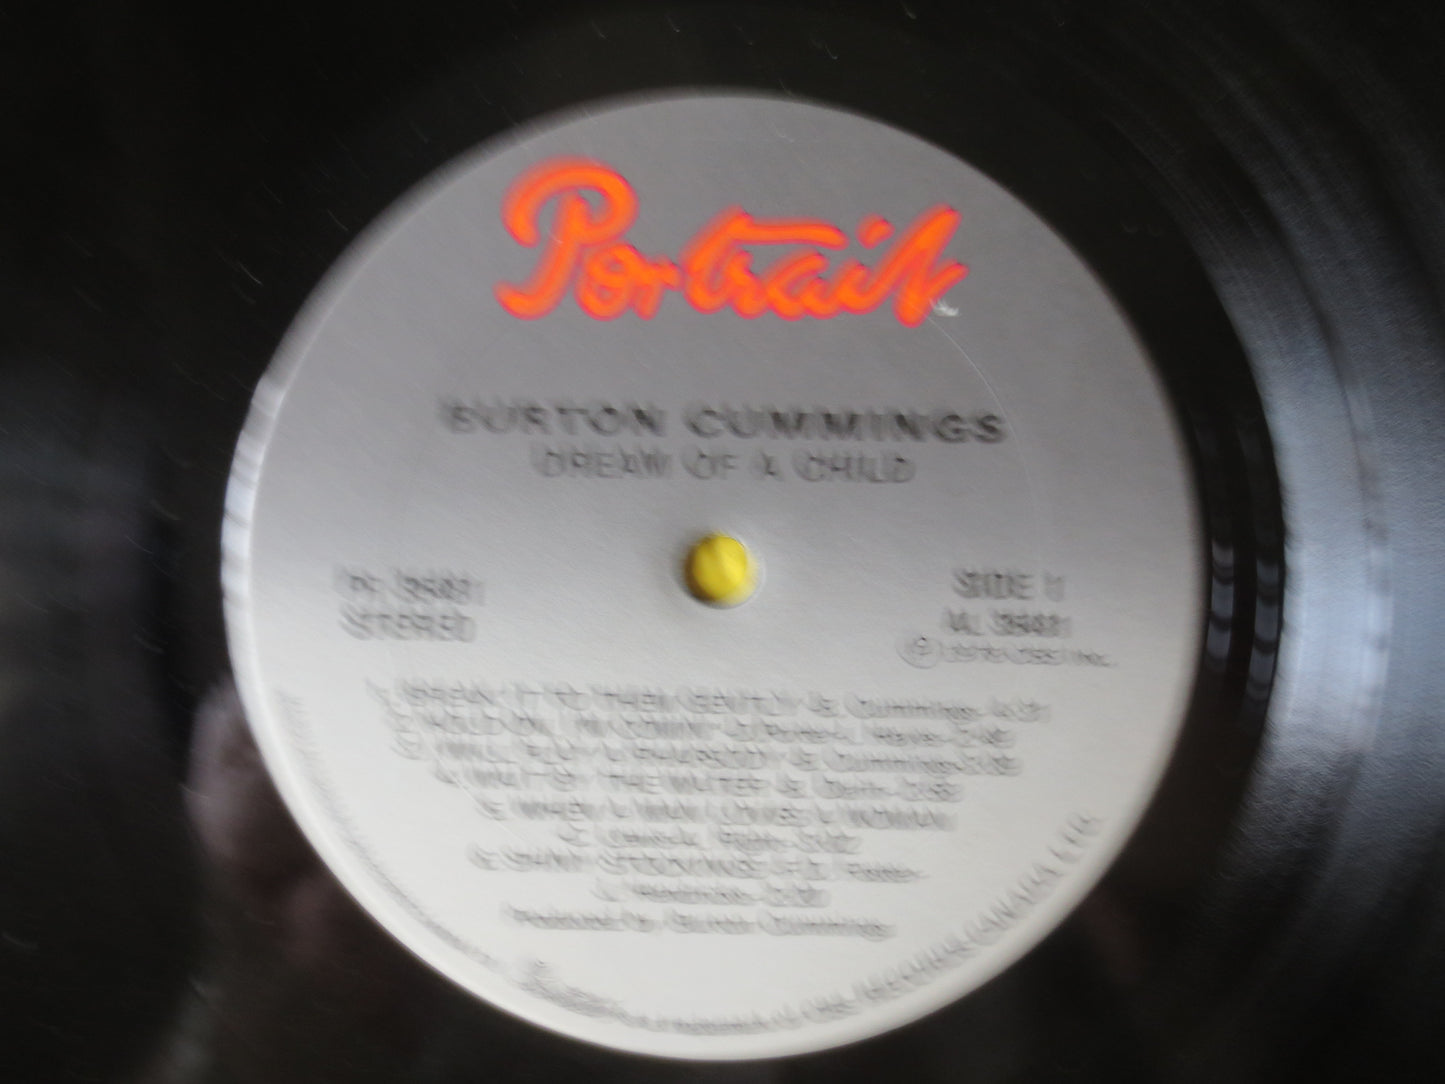 BURTON CUMMINGS, DREAM of a Child, Rock Record, Pop Record, Vintage Vinyl, Record, Vinyl Record, Vinyl Album, 1978 Records